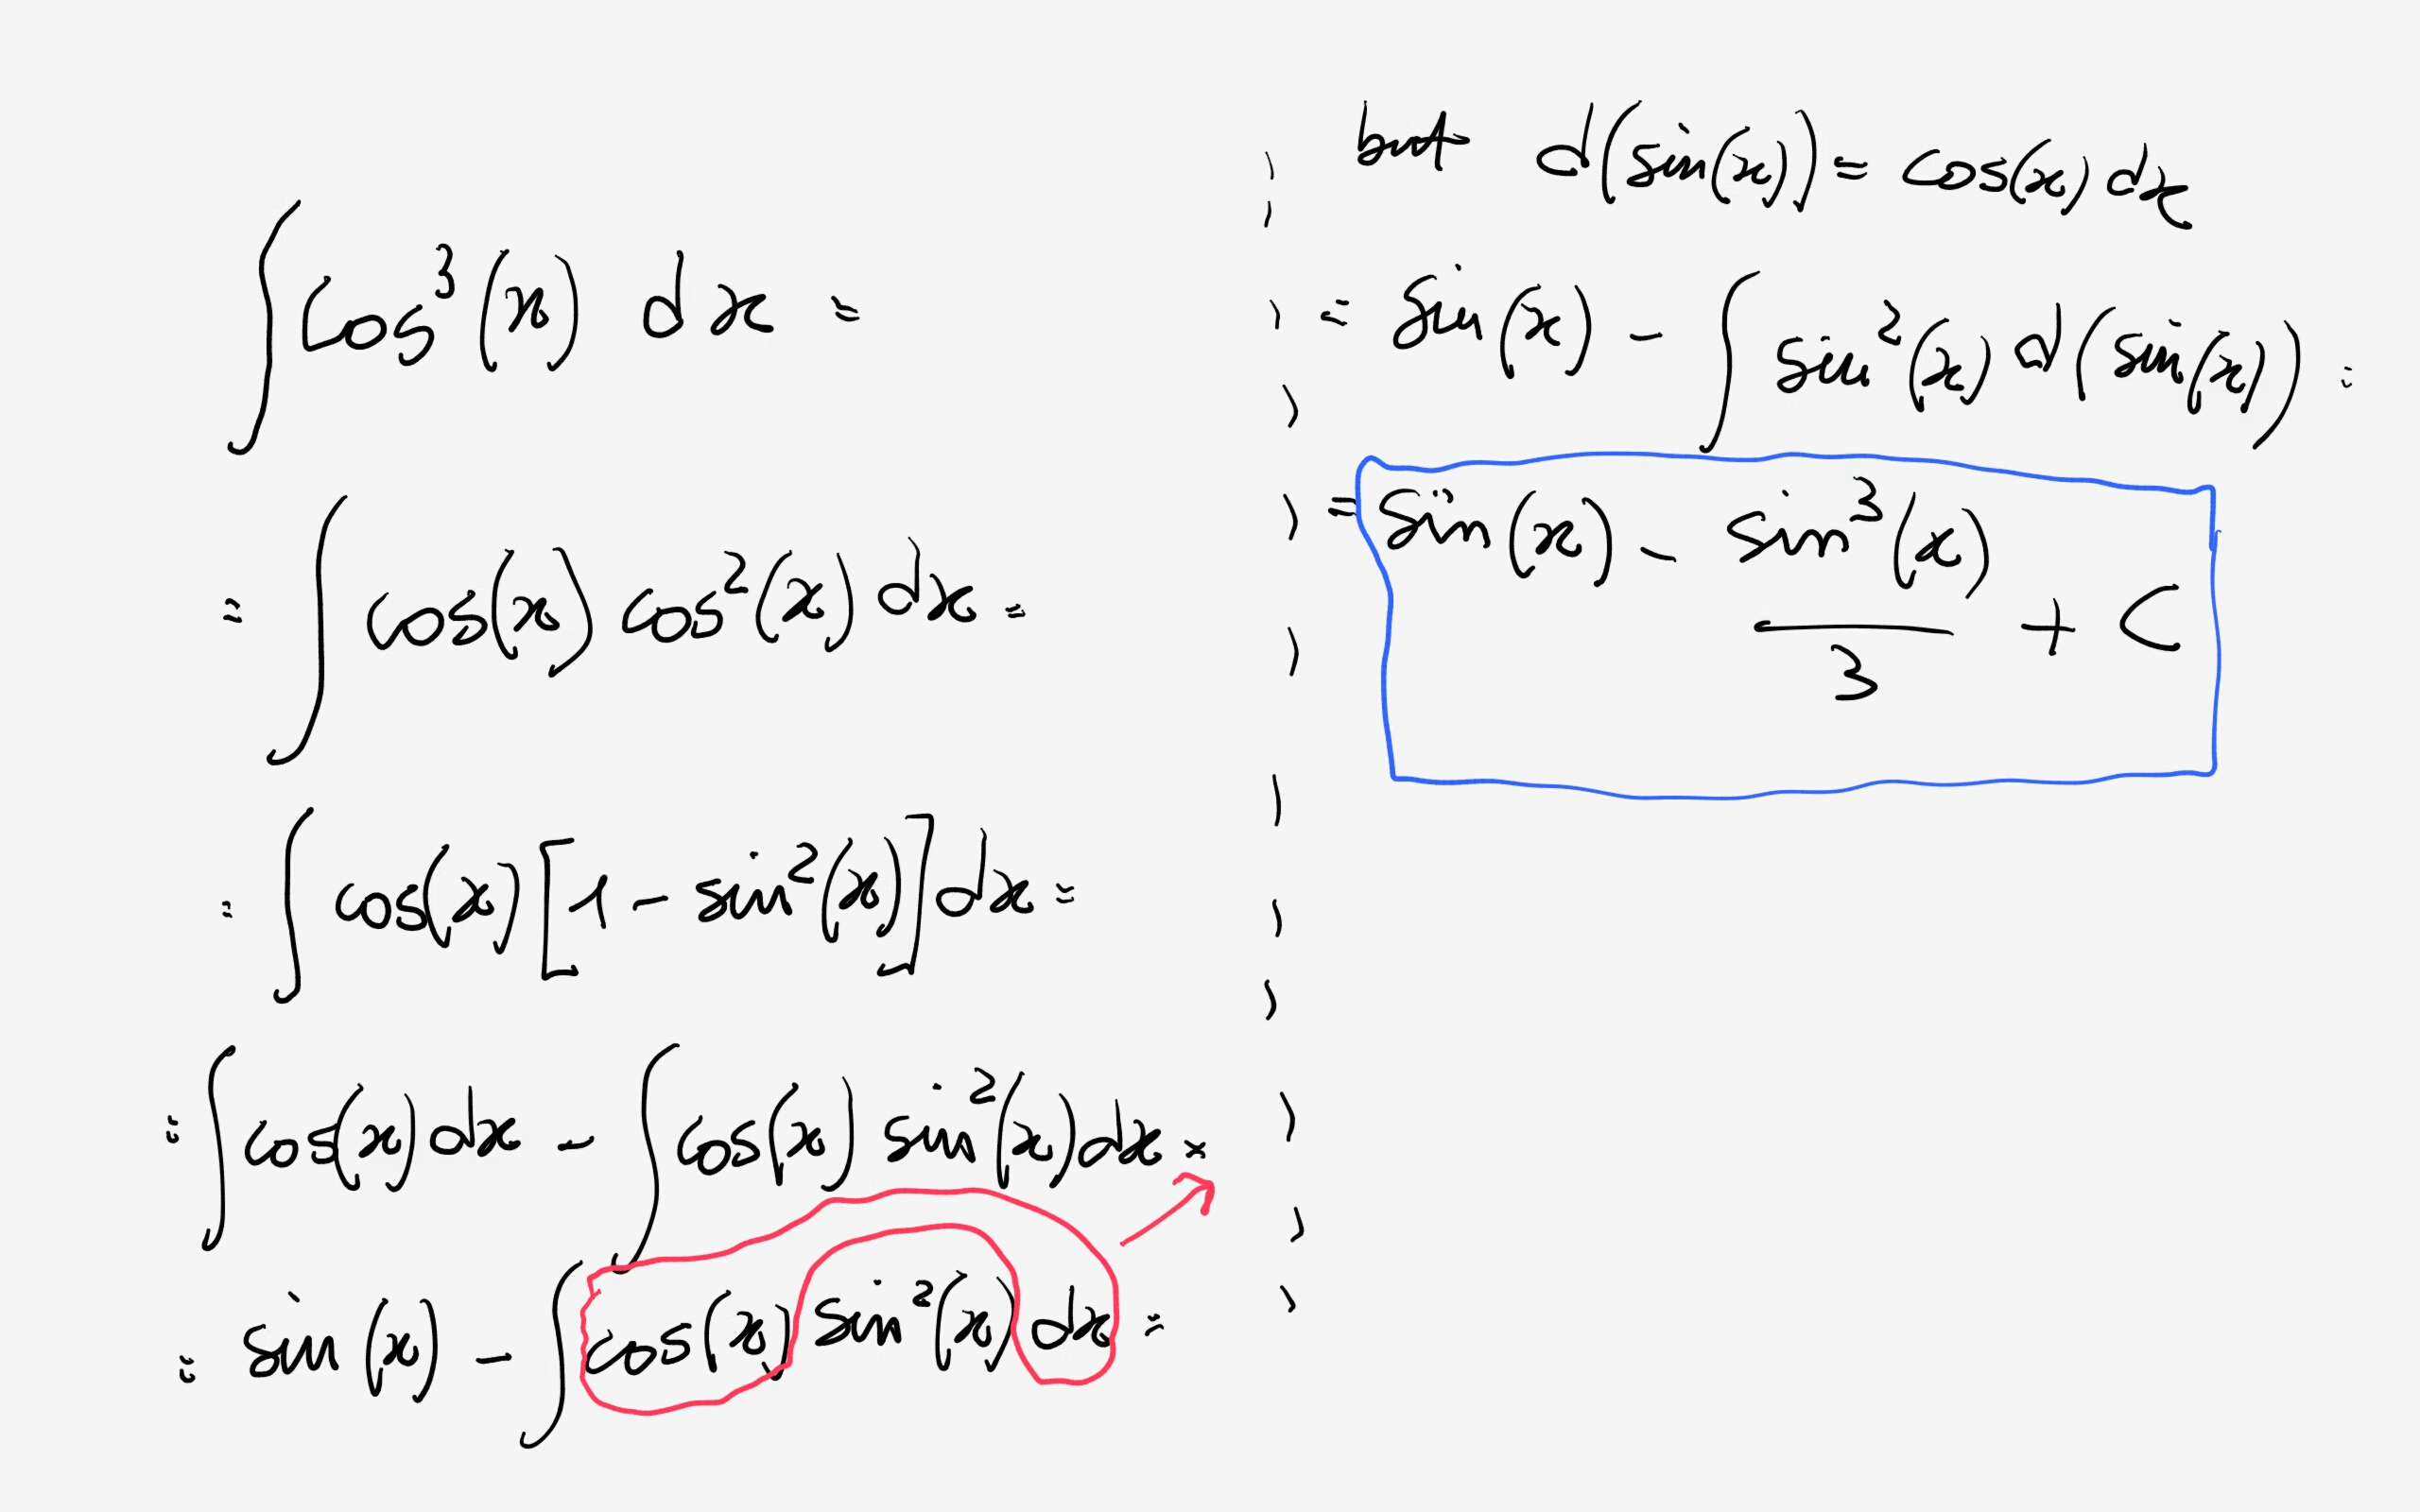 Ví dụ ứng dụng công thức Cos 3x trong tính toán